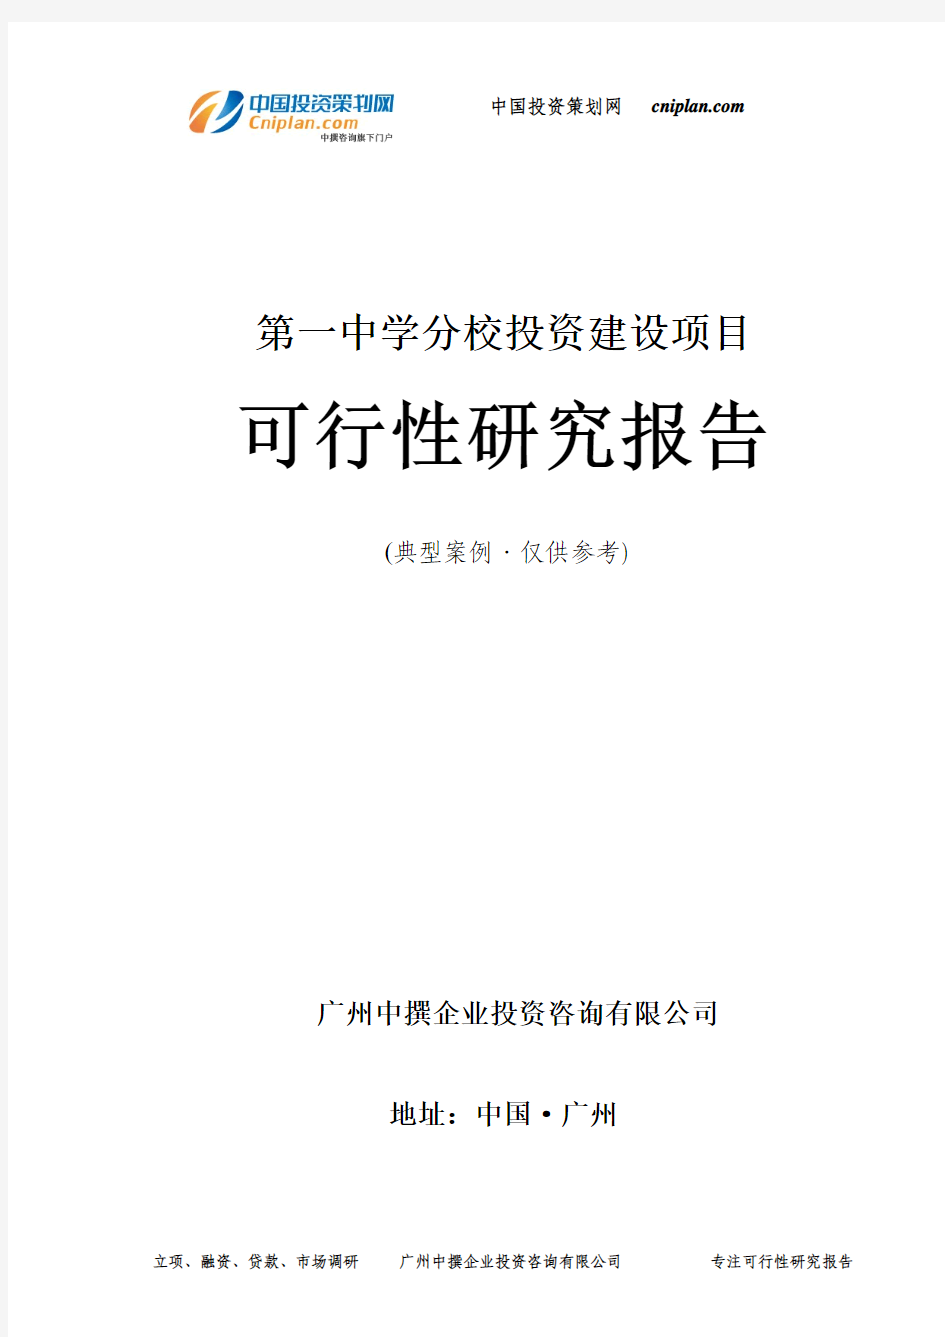 第一中学分校投资建设项目可行性研究报告-广州中撰咨询